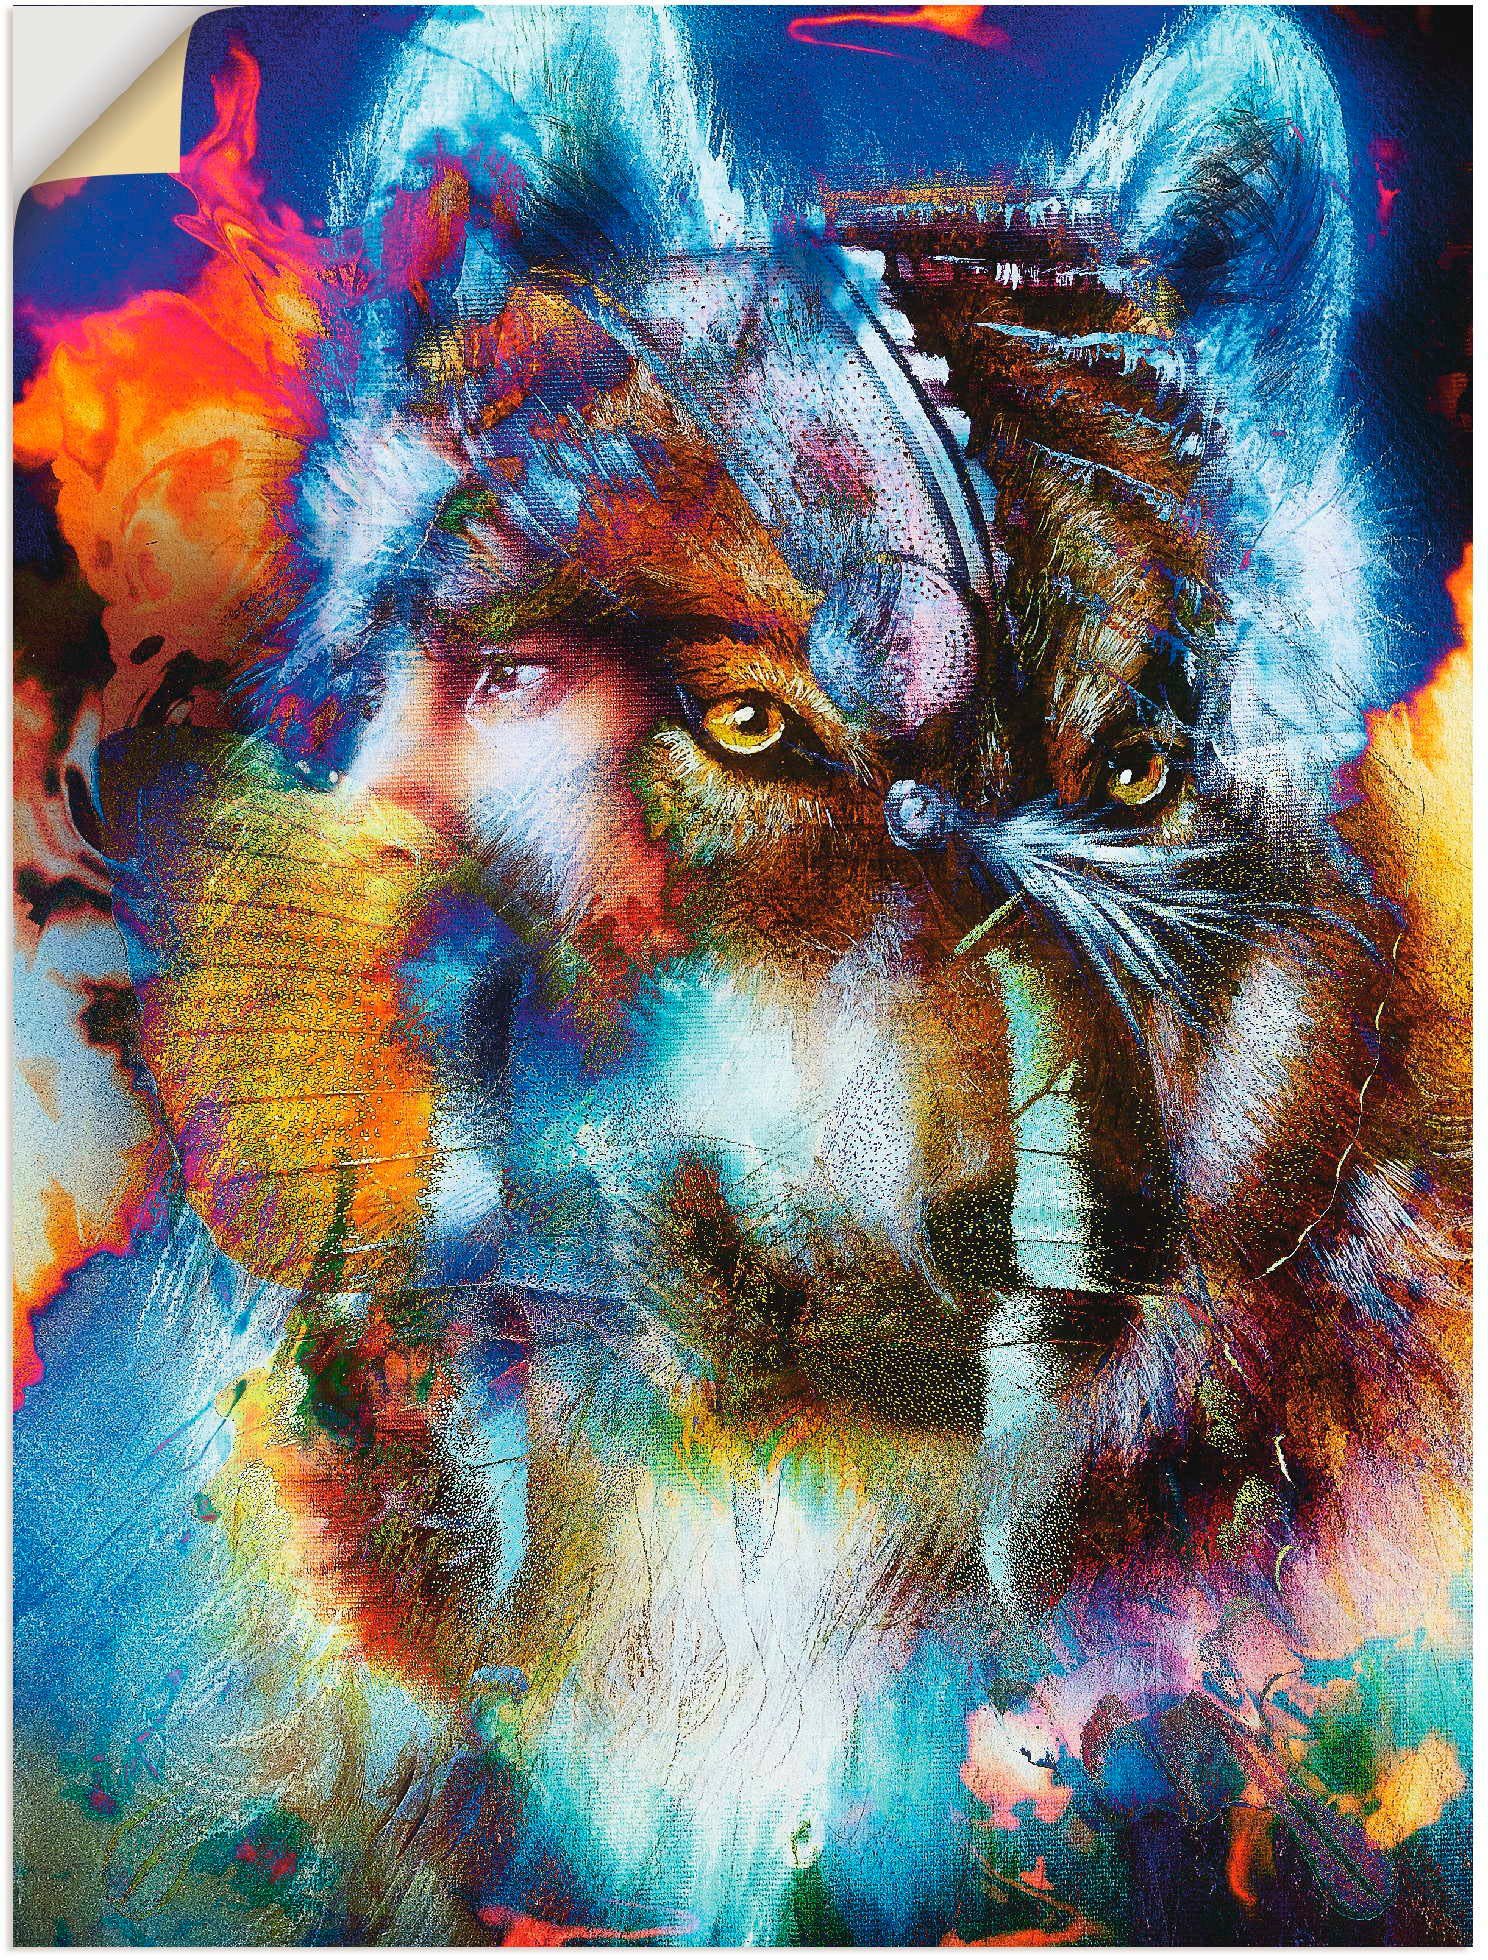 Artland Artprint Indiase Krijger met wolf in vele afmetingen & productsoorten - artprint van aluminium / artprint voor buiten, artprint op linnen, poster, muursticker / wandfolie o